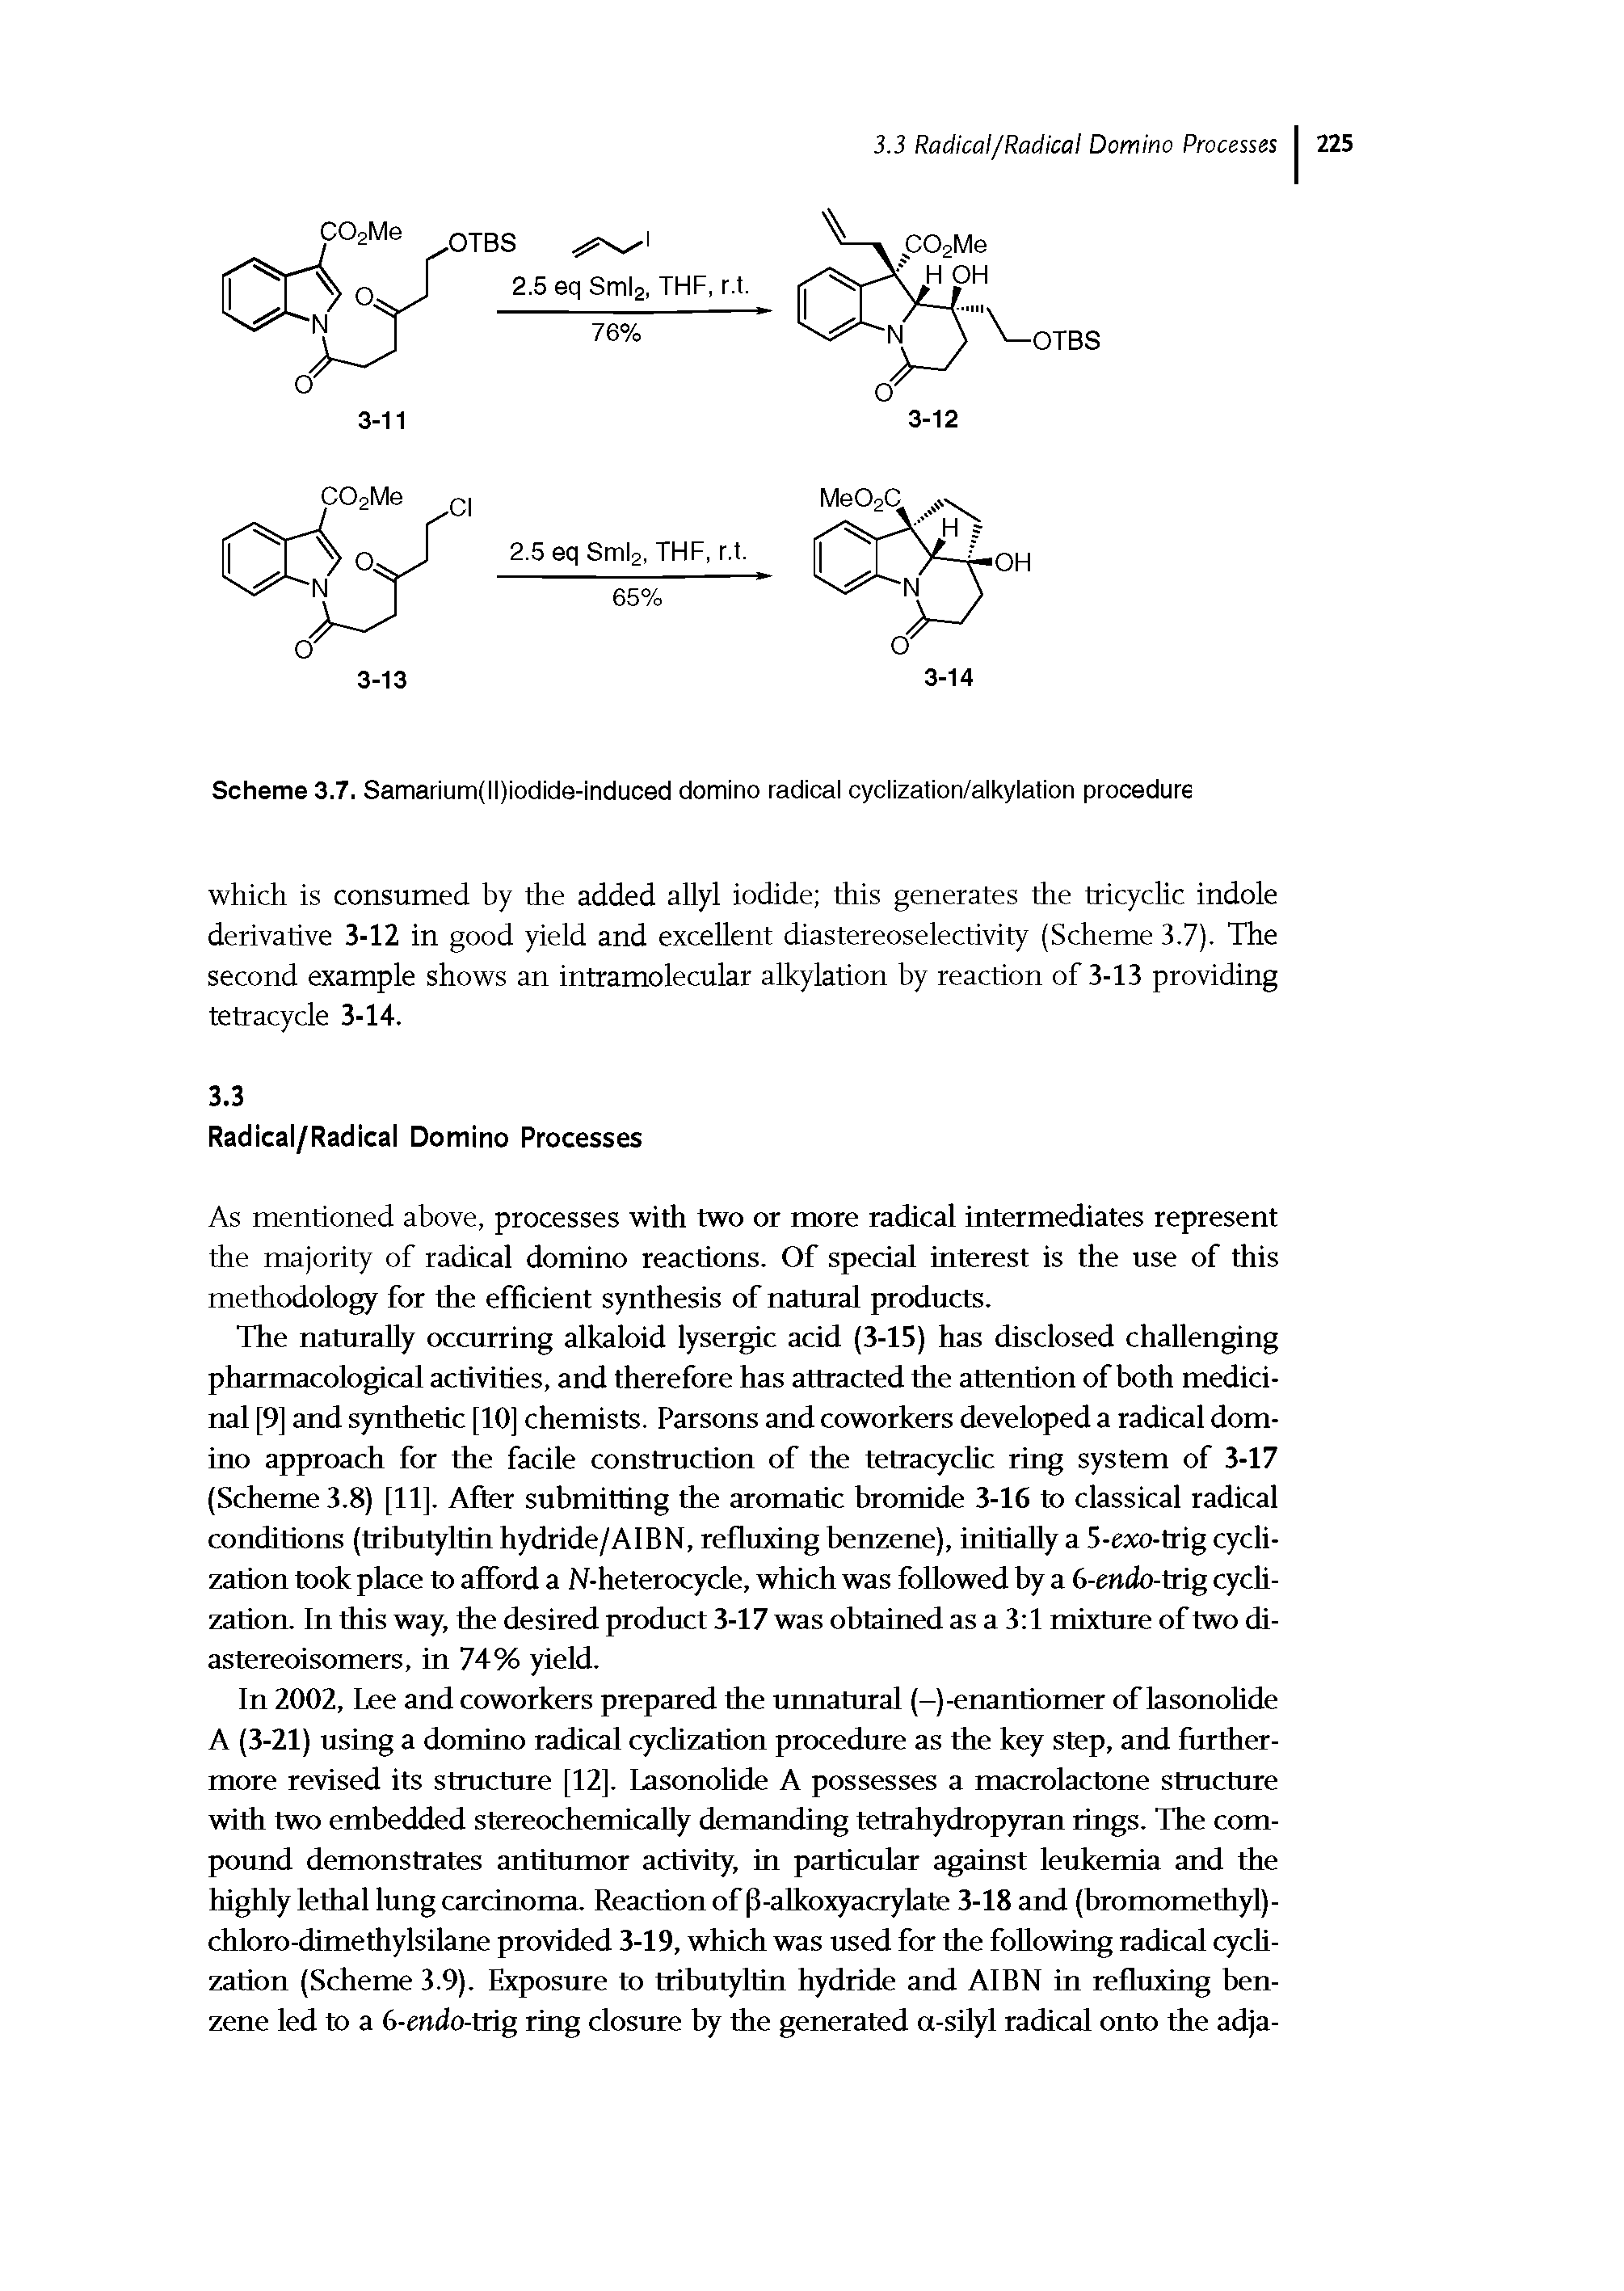 Scheme 3.7. Samarium(ll)iodide-induced domino radical cyclization/alkylation procedure...